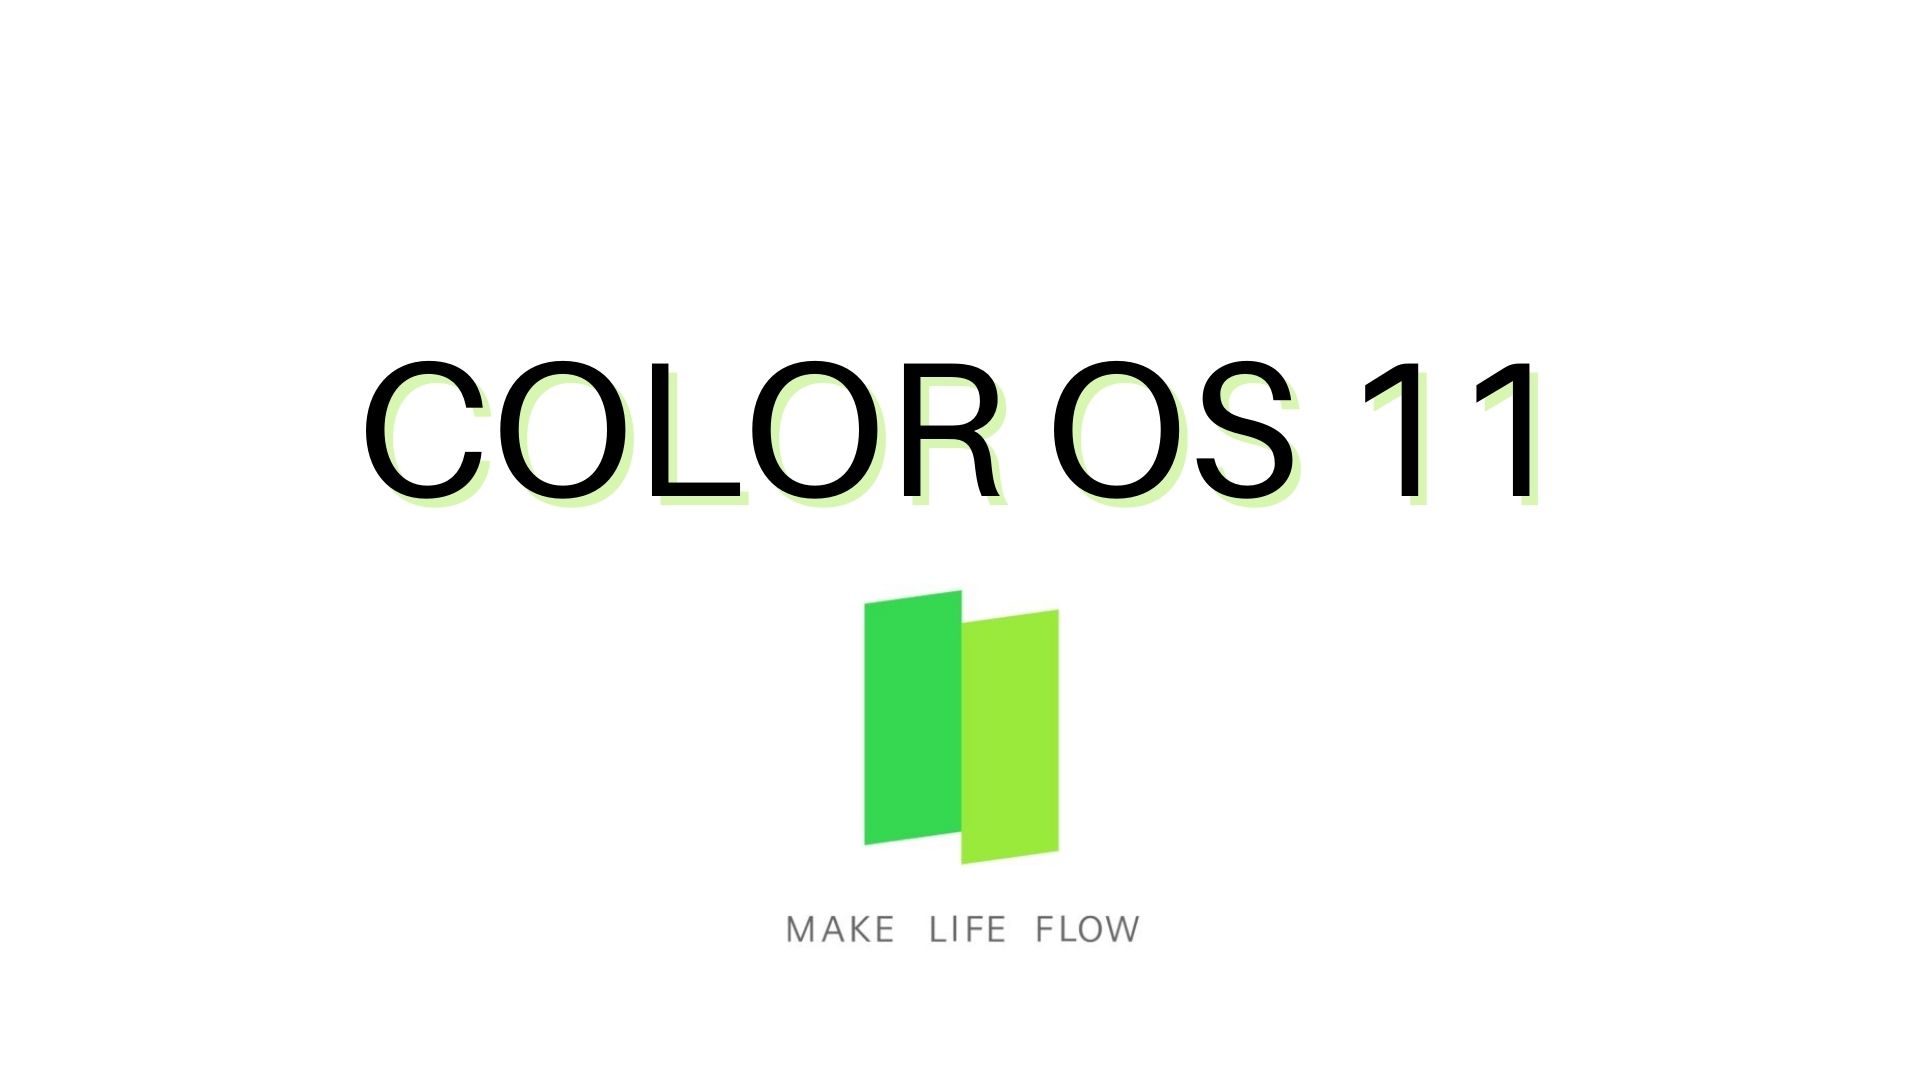 ColorOS 11